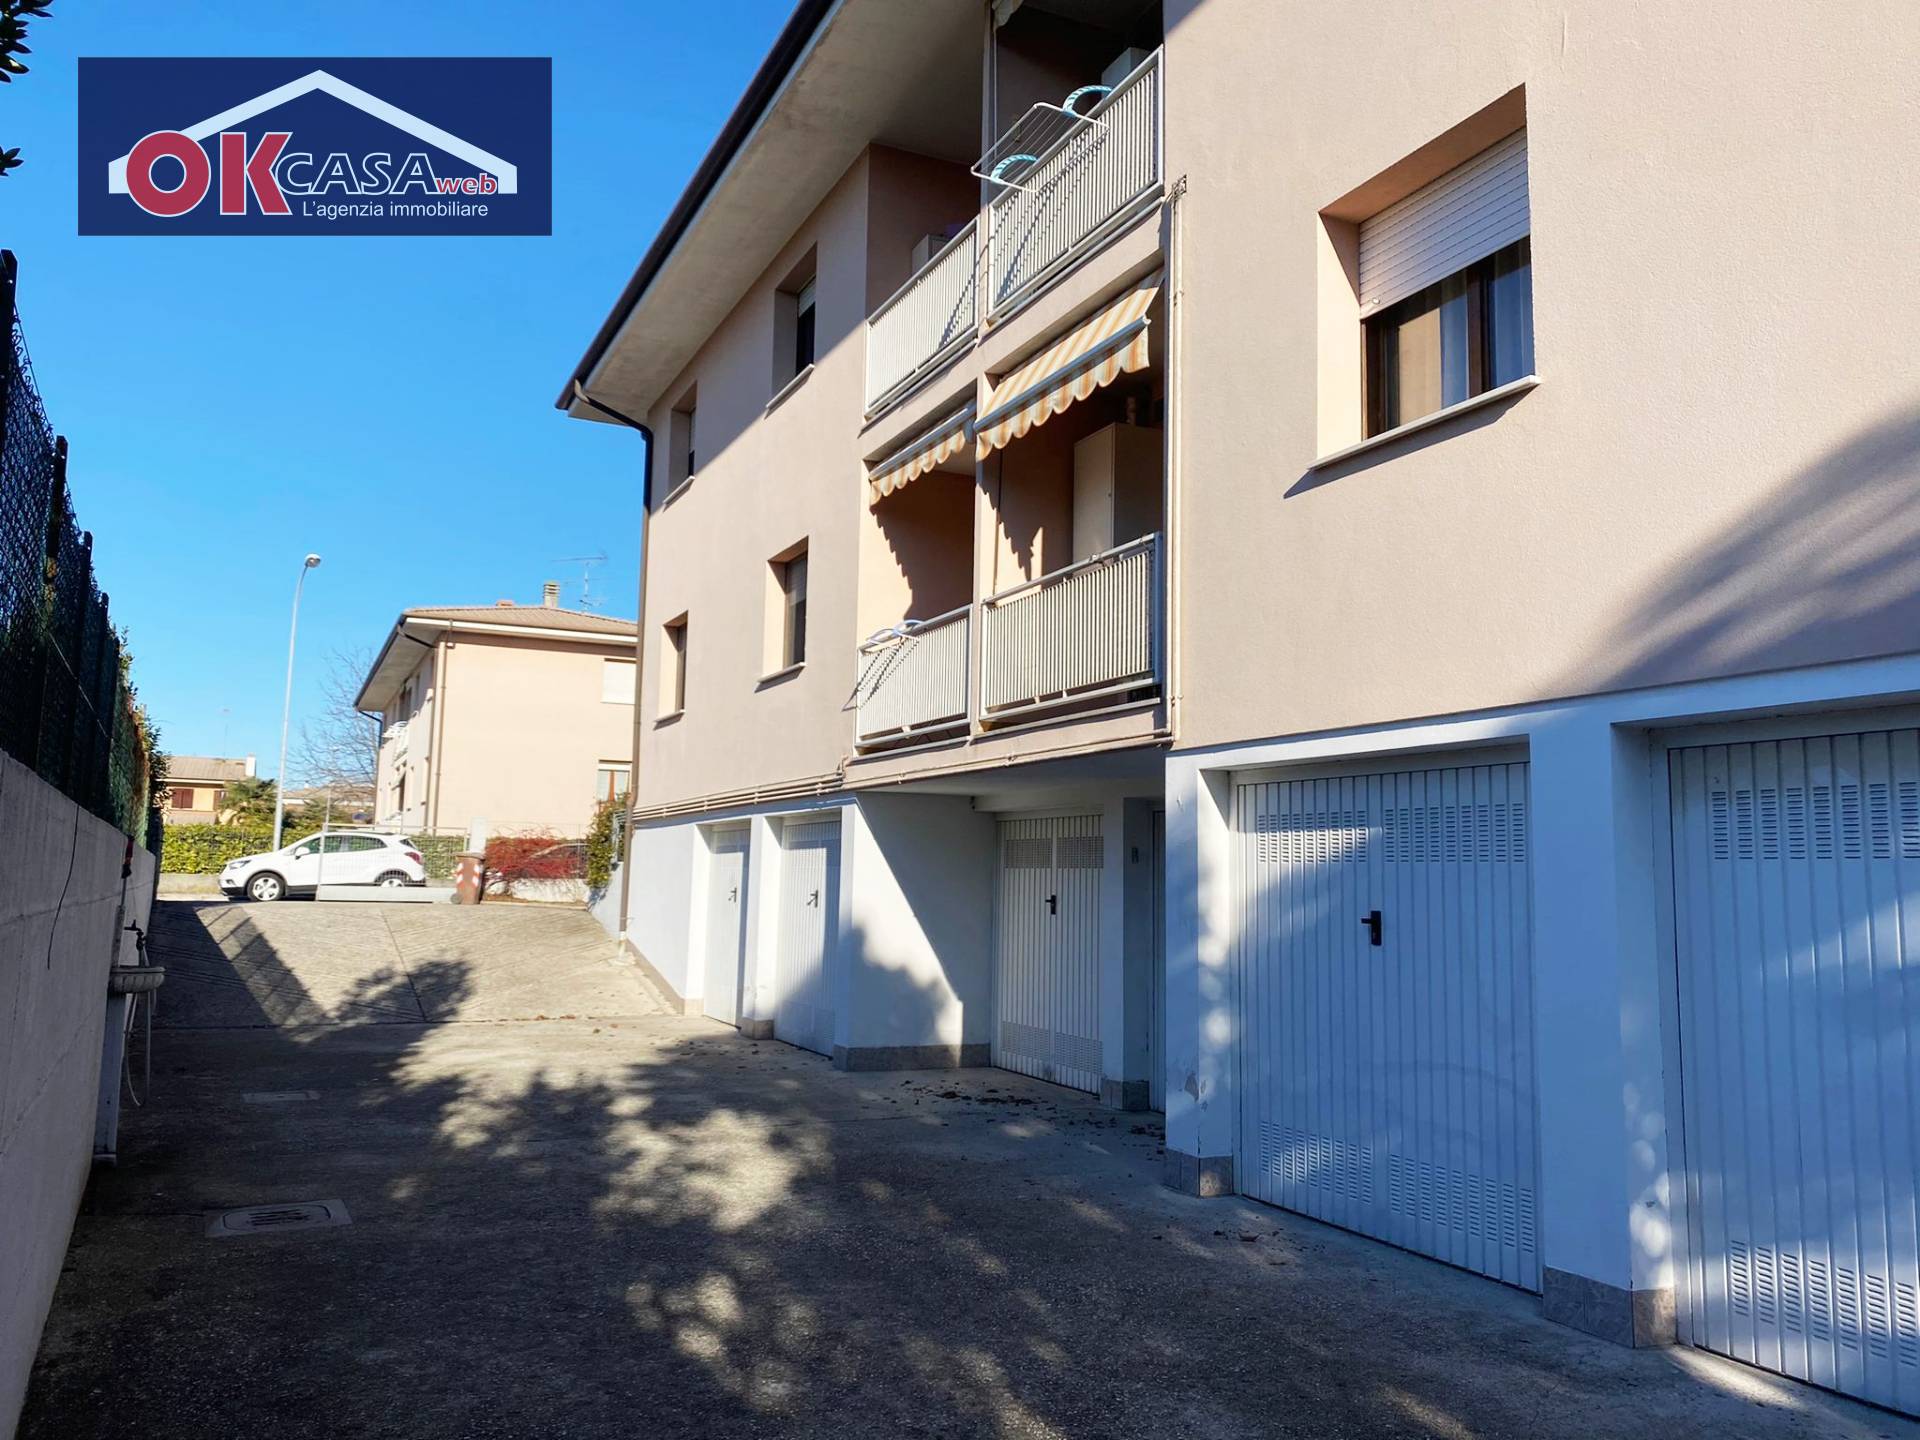 Soluzione Semindipendente in affitto a Gradisca d'Isonzo, 4 locali, prezzo € 600 | CambioCasa.it